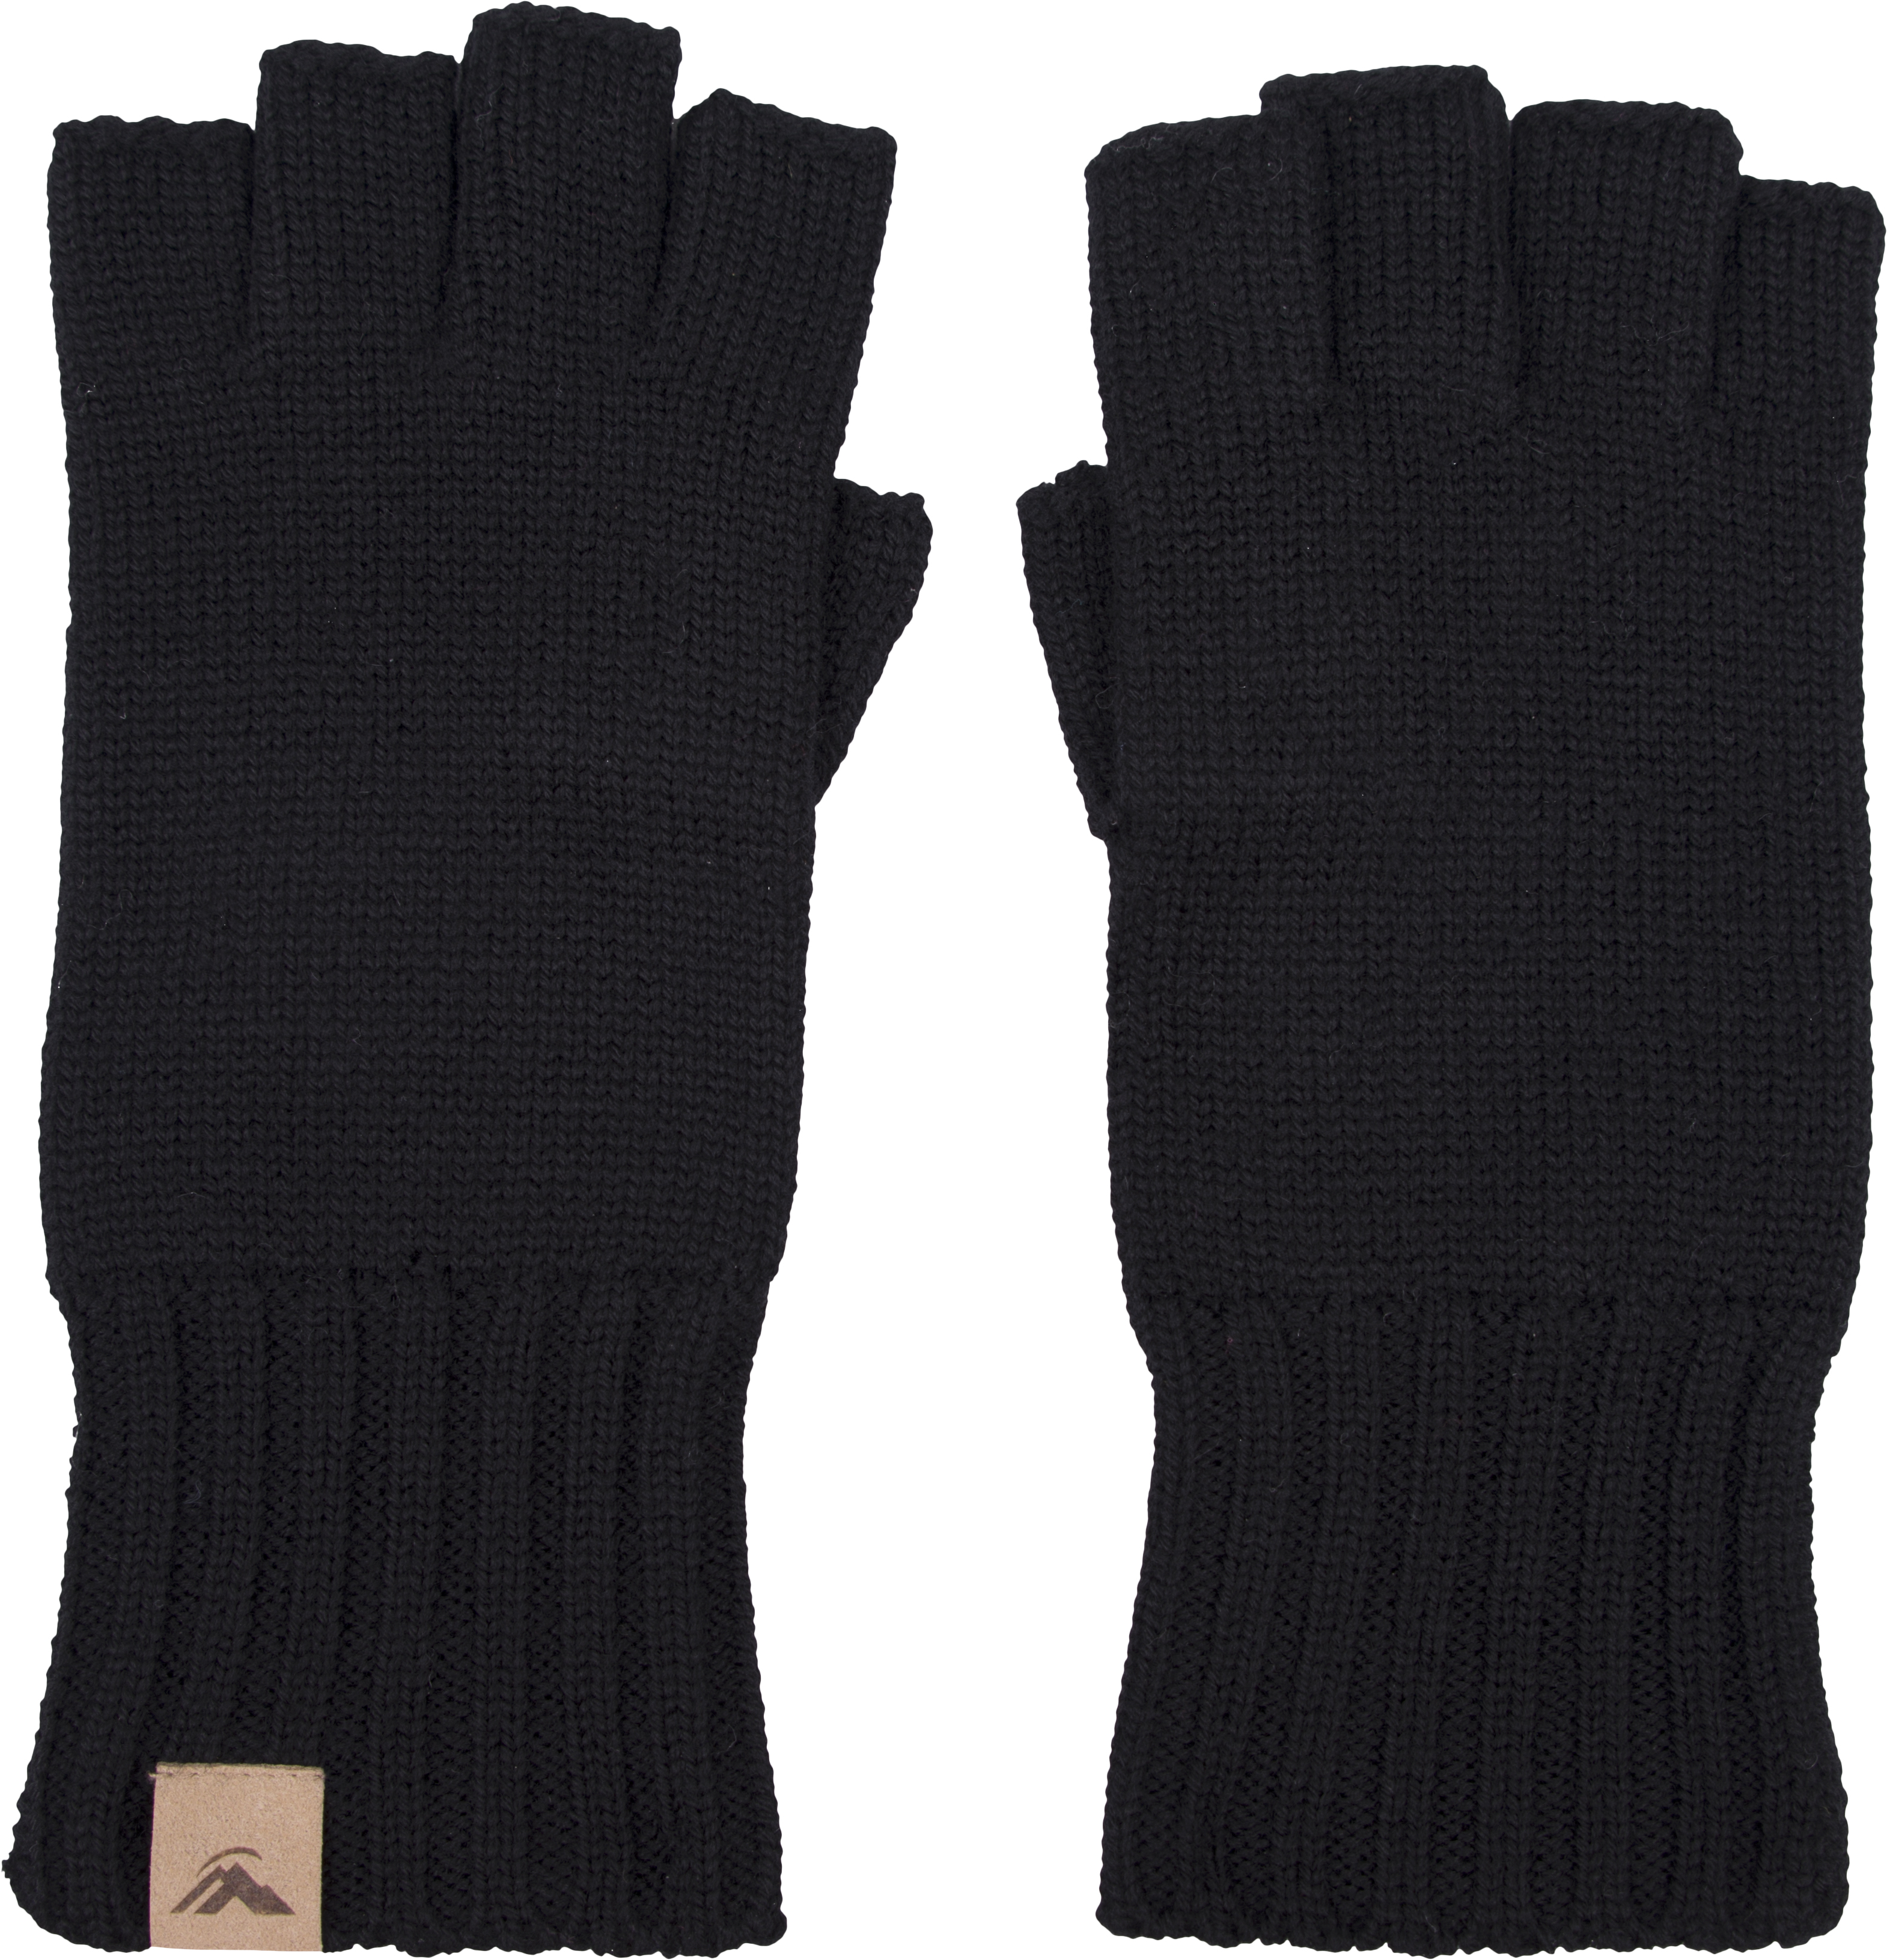 Soft merino knit gloves.